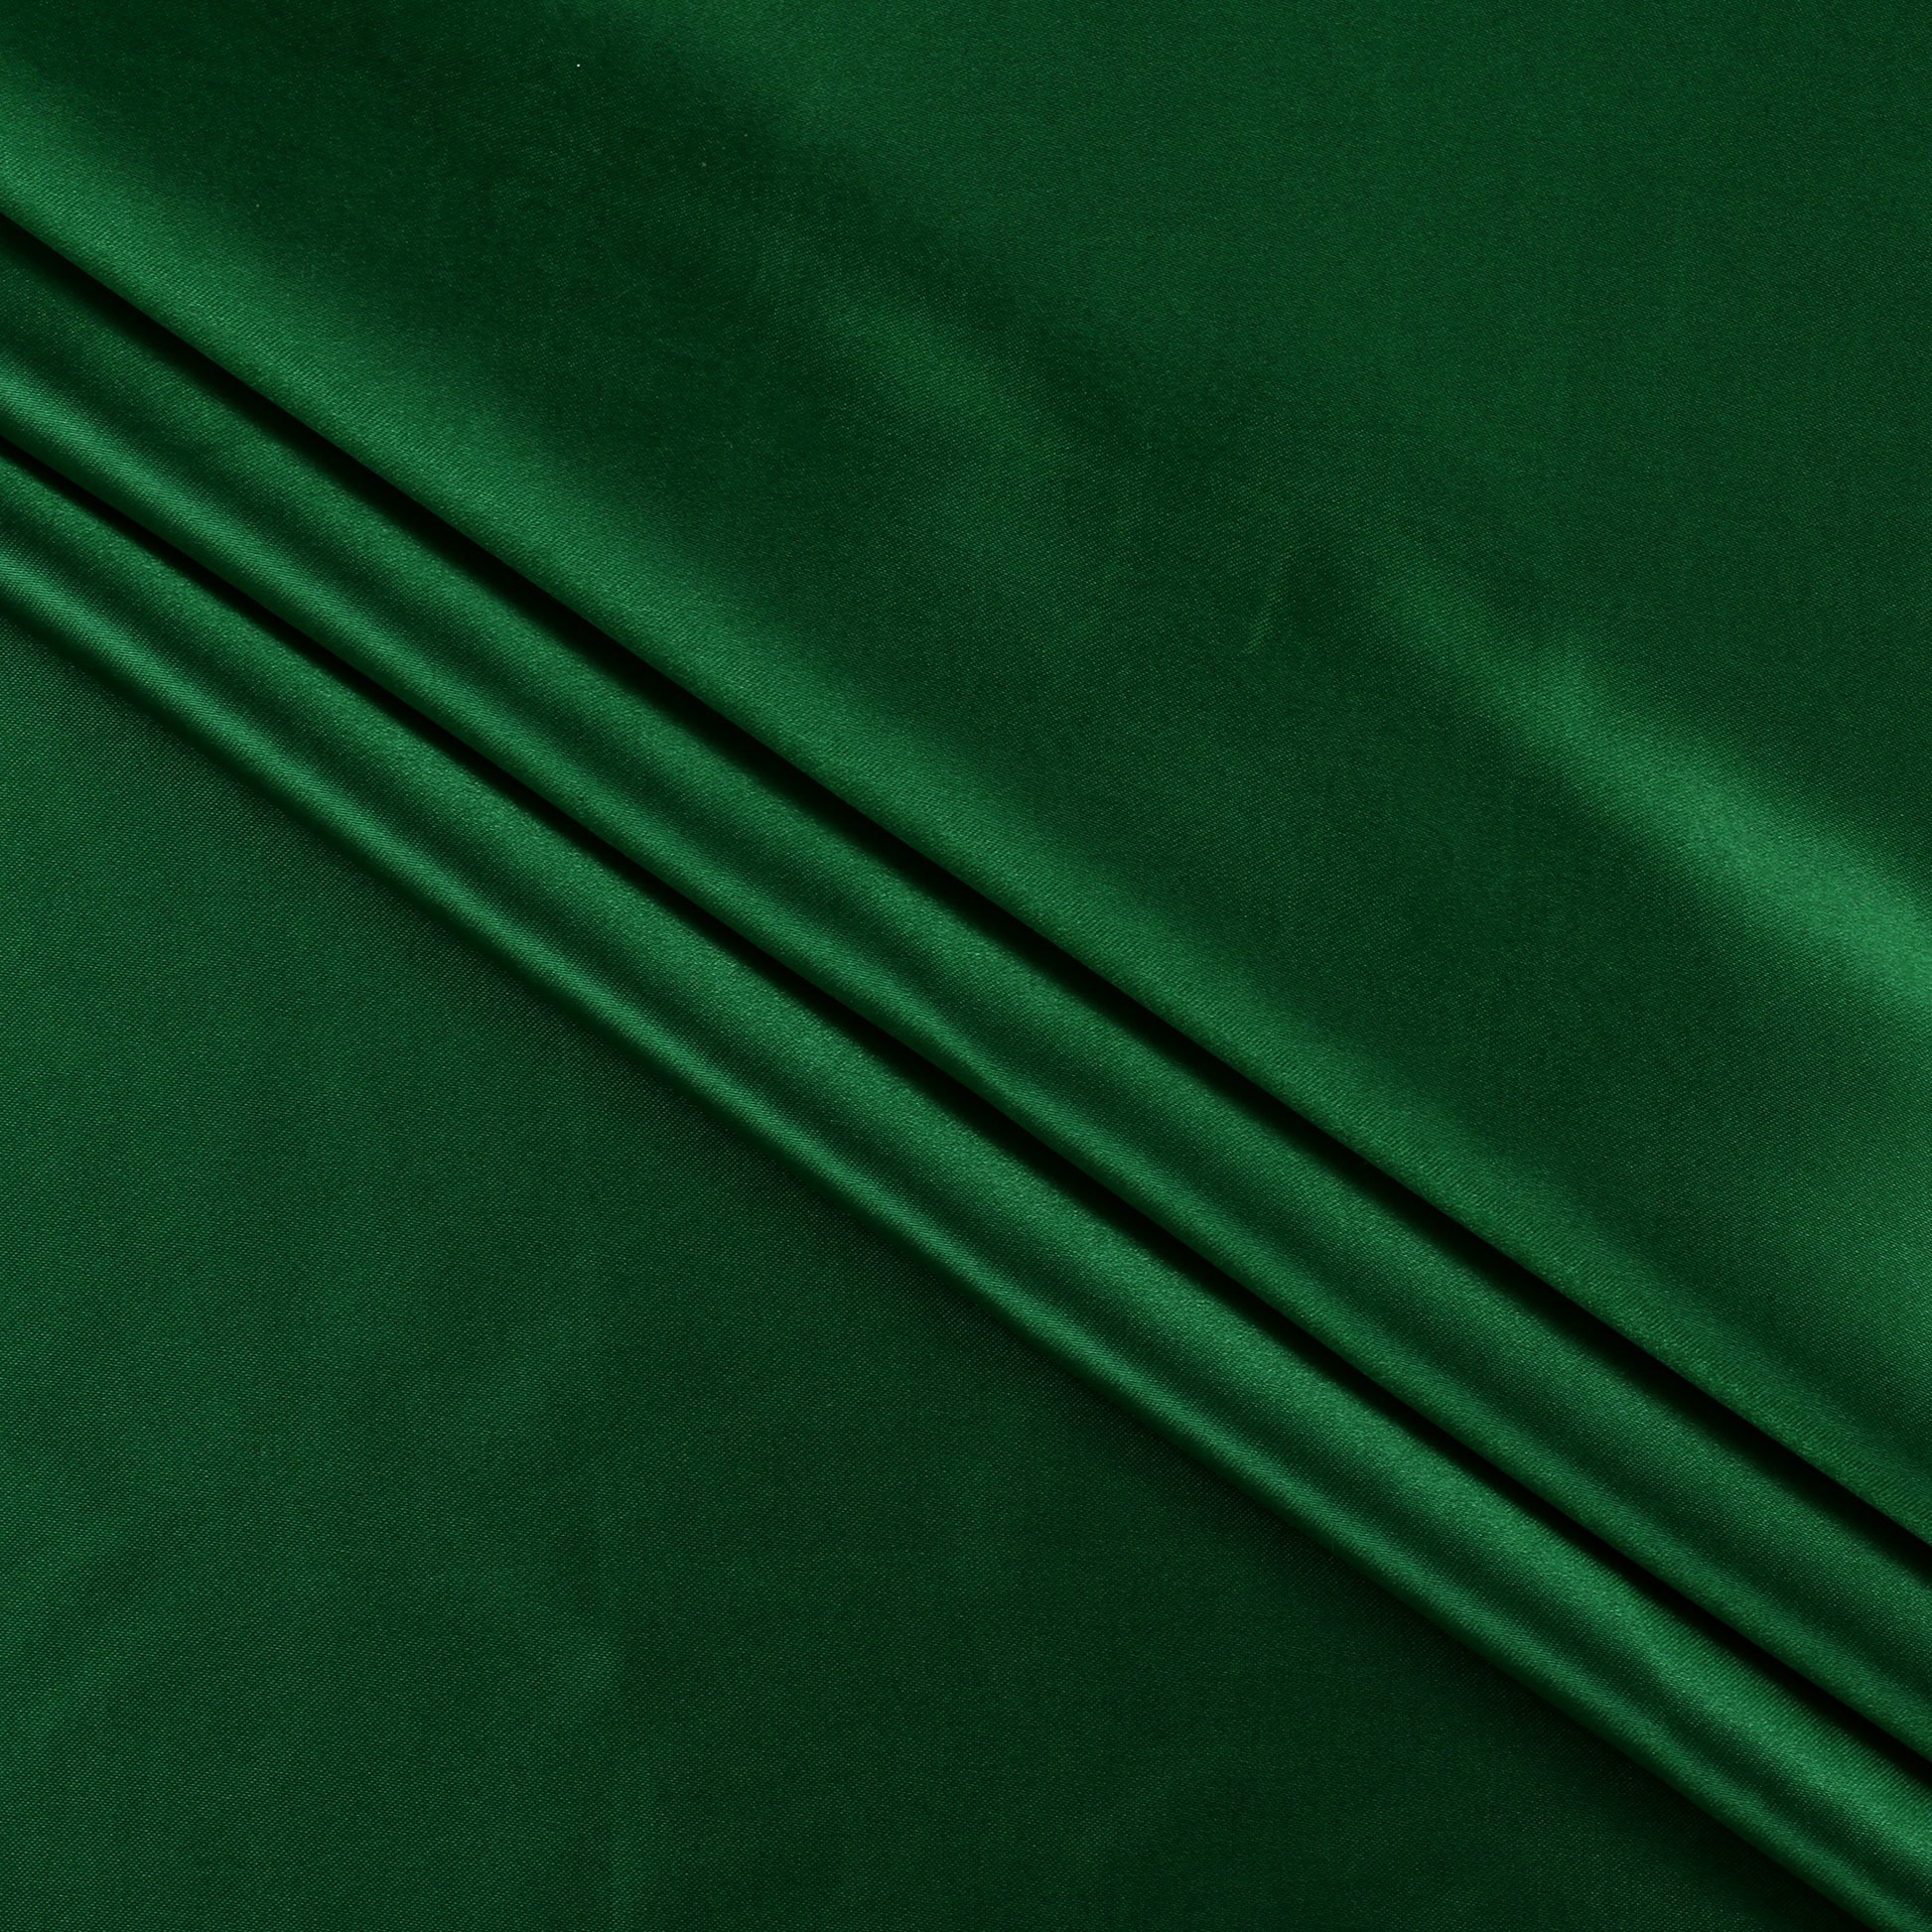 Green,a34af70a-9c28-409a-b180-c7b6616ca58c